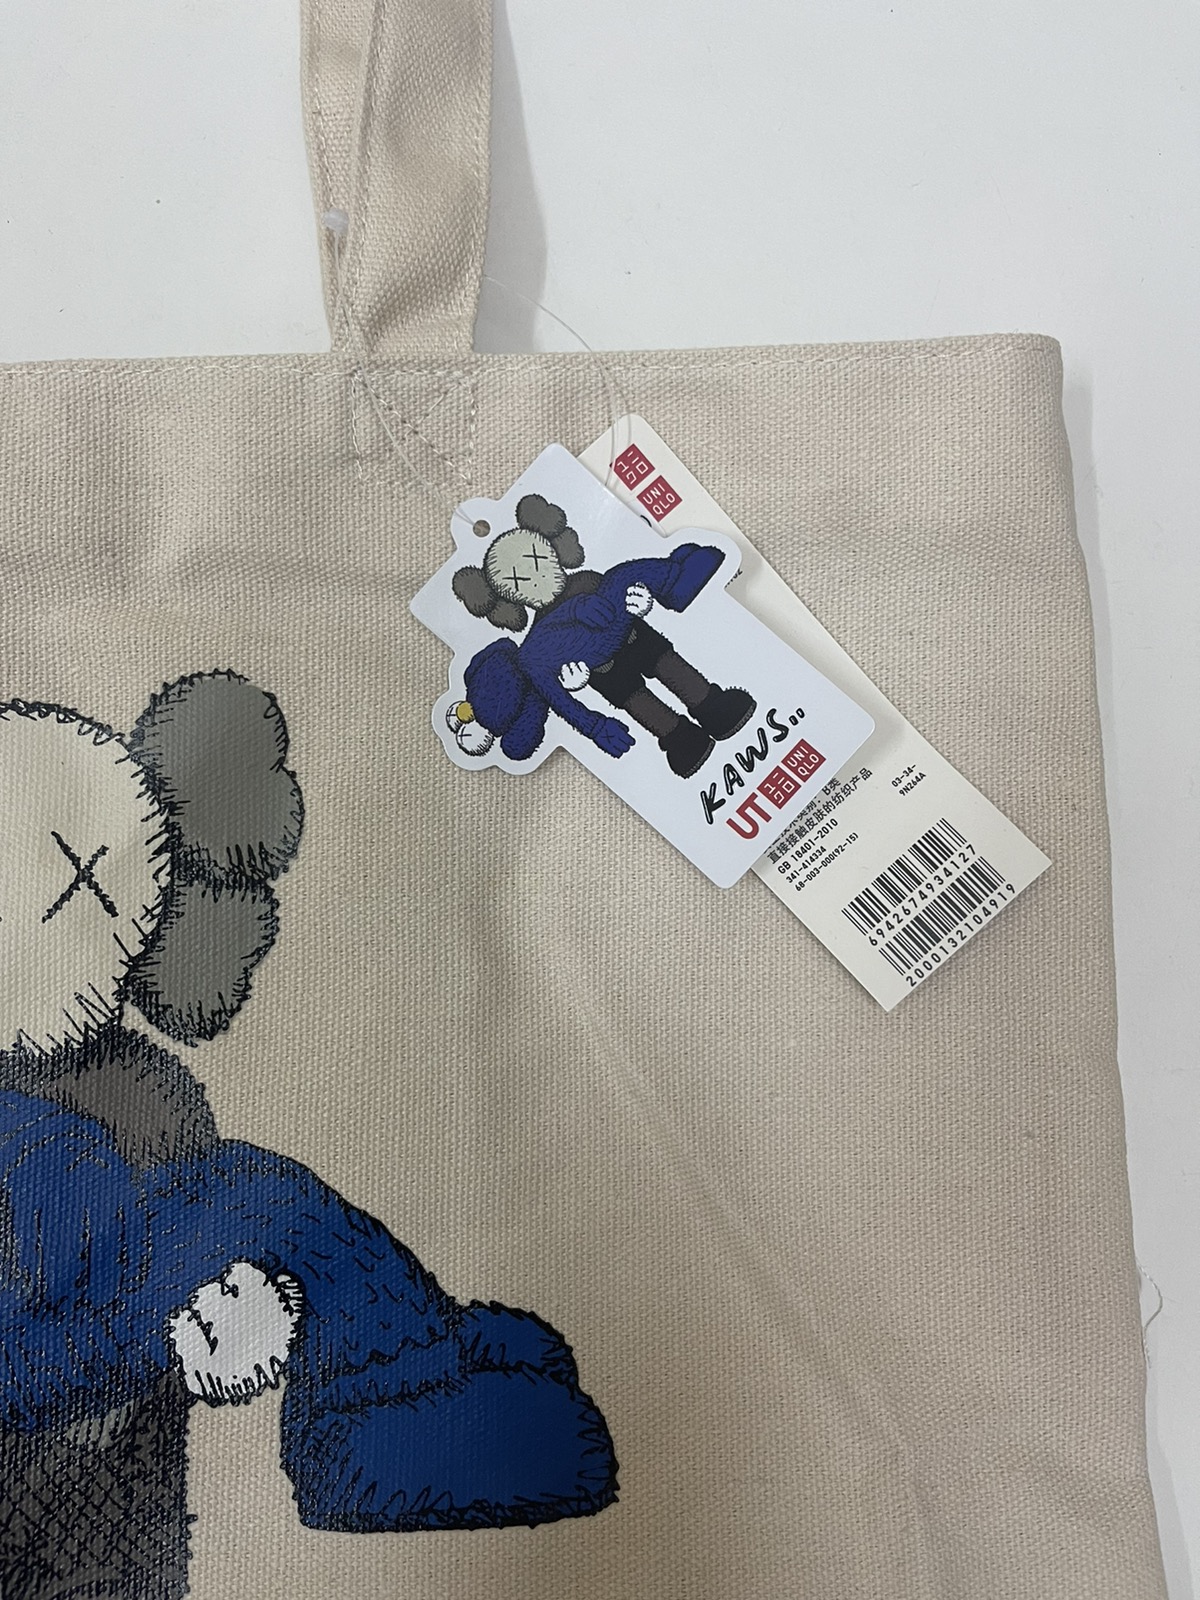 Kaws - Kaws Tote Bag Limited Edition / Uniqlo / Evangelion - 3